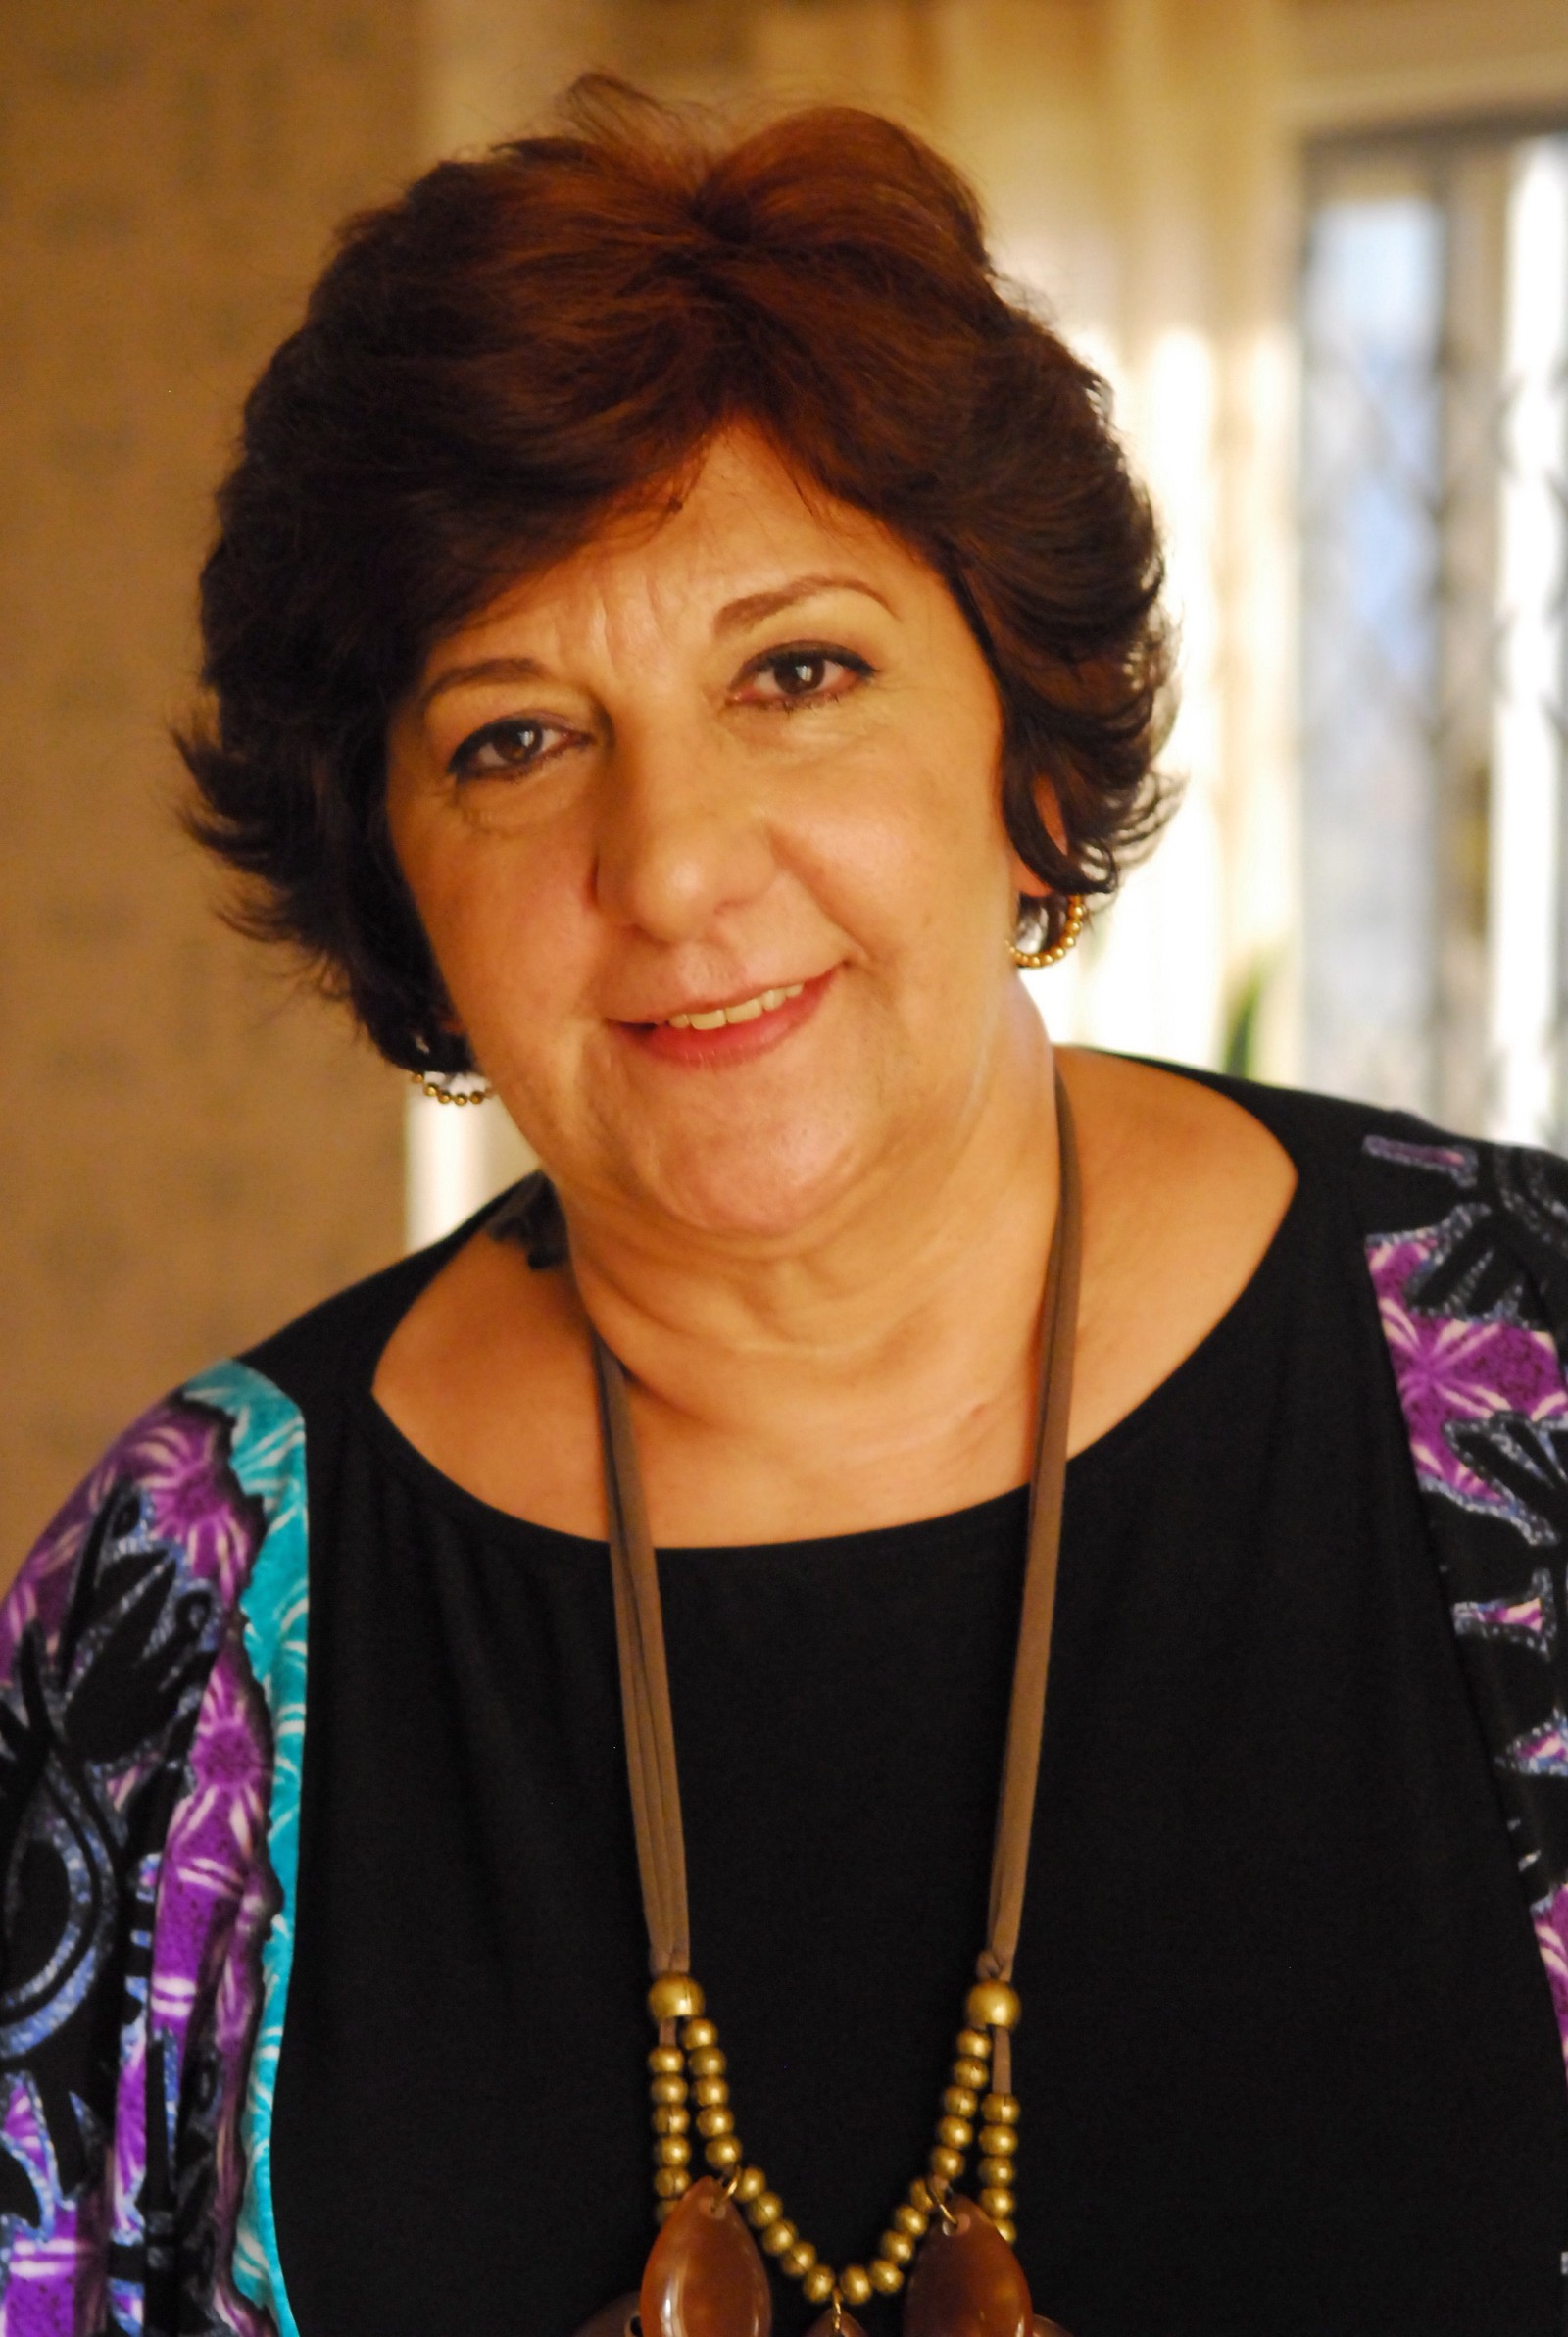 Jandira Martini foi Gilda em "Escrito nas estrelas", novela de 2010 — Foto: João Miguel Júnior